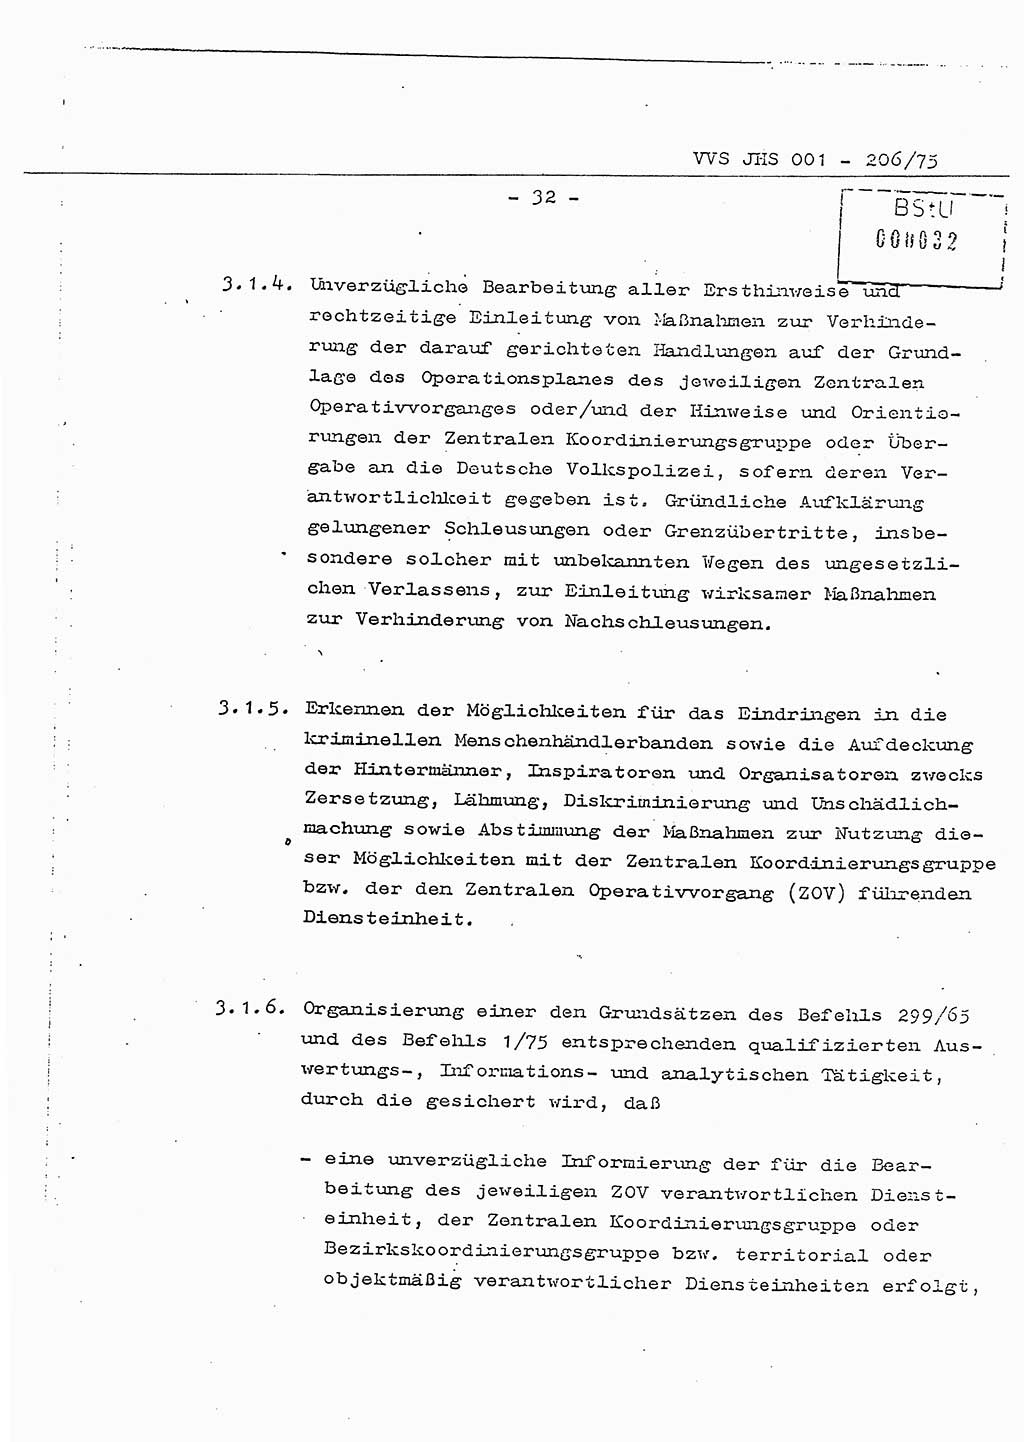 Dissertation Generalmajor Manfred Hummitzsch (Leiter der BV Leipzig), Generalmajor Heinz Fiedler (HA Ⅵ), Oberst Rolf Fister (HA Ⅸ), Ministerium für Staatssicherheit (MfS) [Deutsche Demokratische Republik (DDR)], Juristische Hochschule (JHS), Vertrauliche Verschlußsache (VVS) 001-206/75, Potsdam 1975, Seite 32 (Diss. MfS DDR JHS VVS 001-206/75 1975, S. 32)